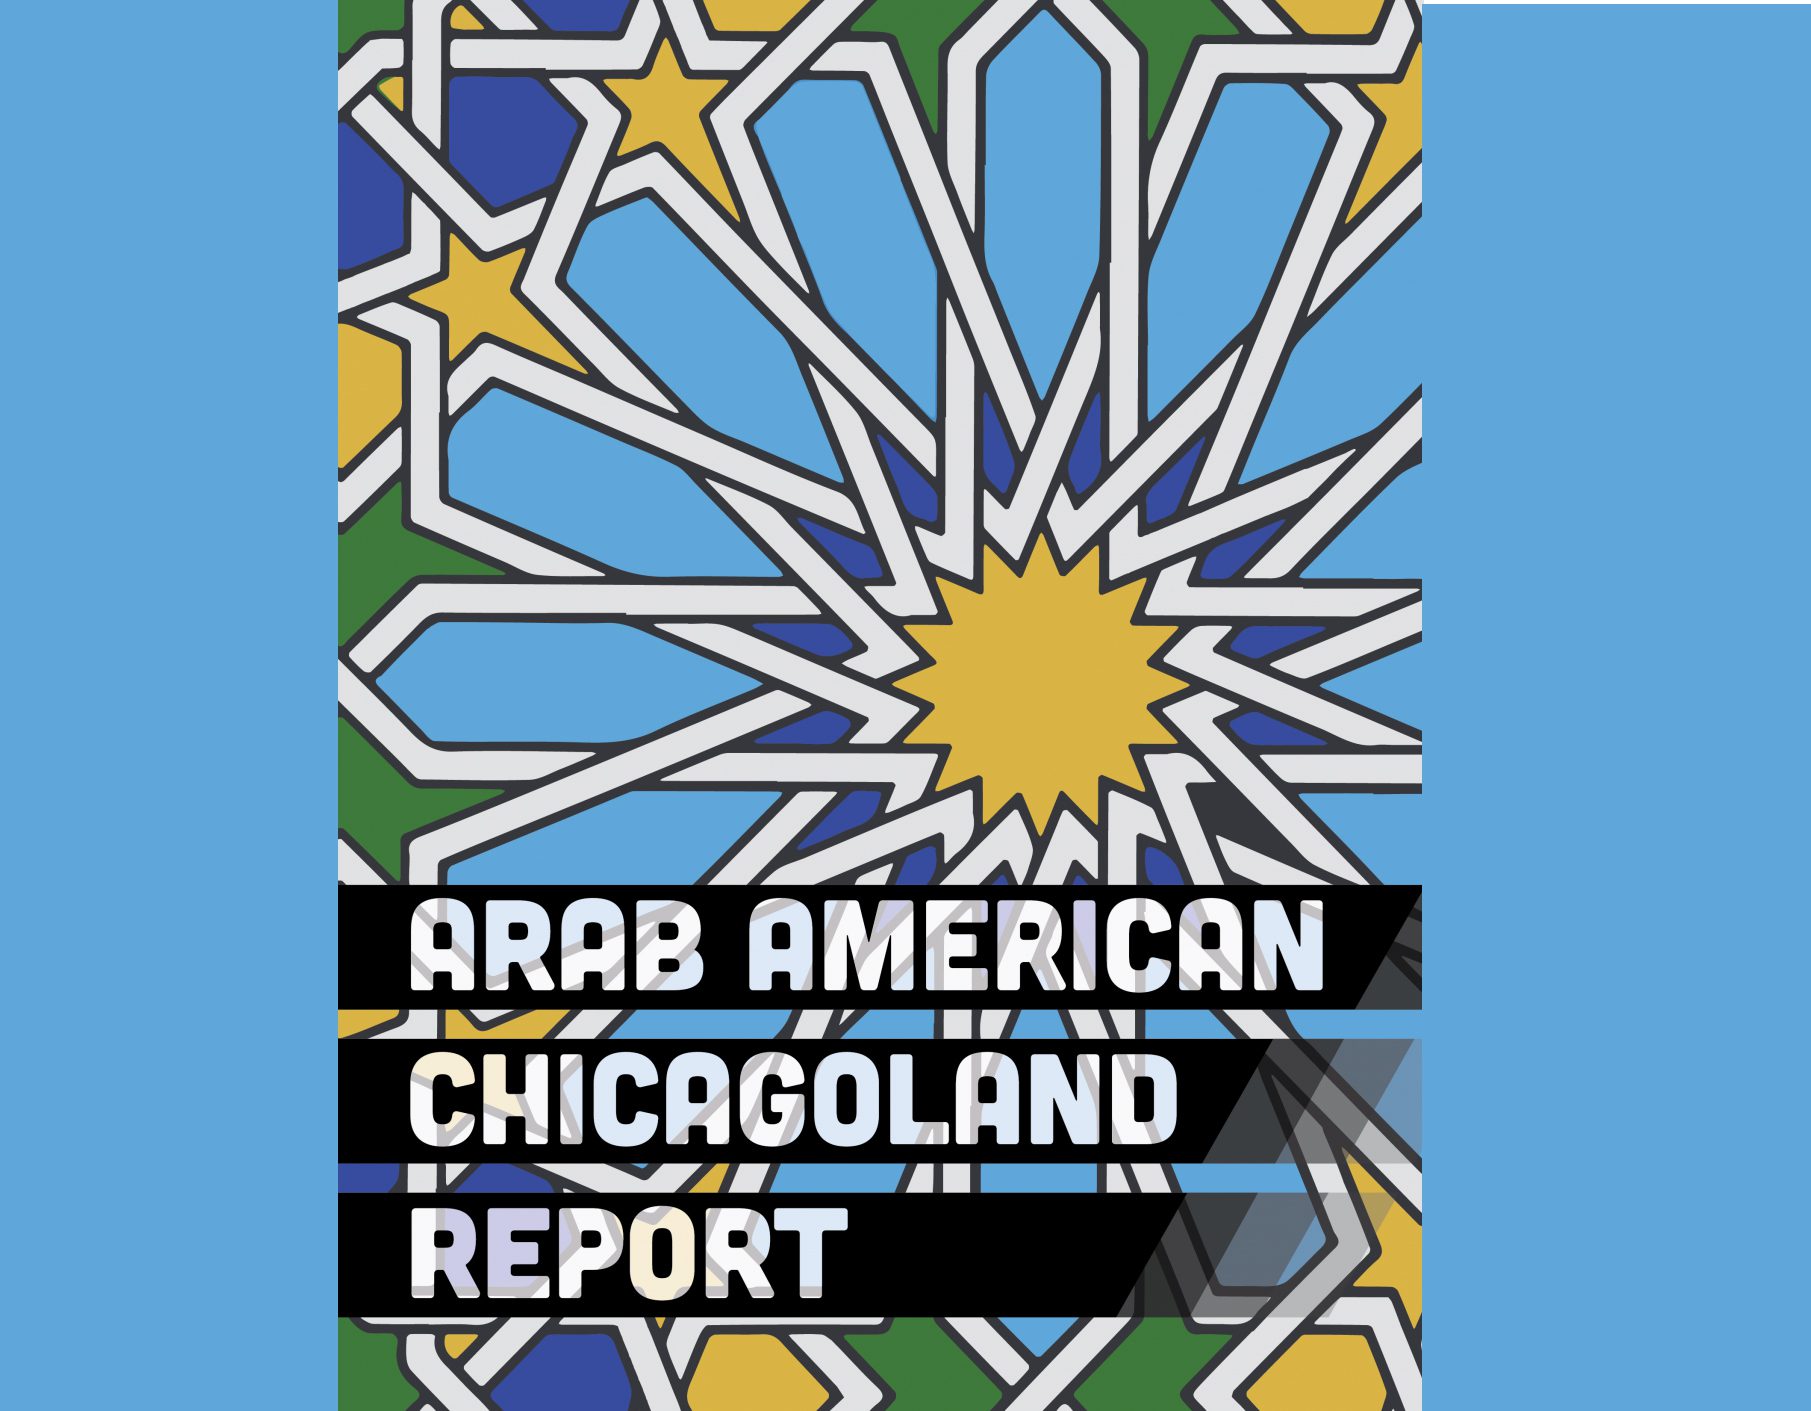 يفحص تقرير اتحاد المحاكم الإسلامية العدالة العرقية للأمريكيين العرب في تشيكاجولاند